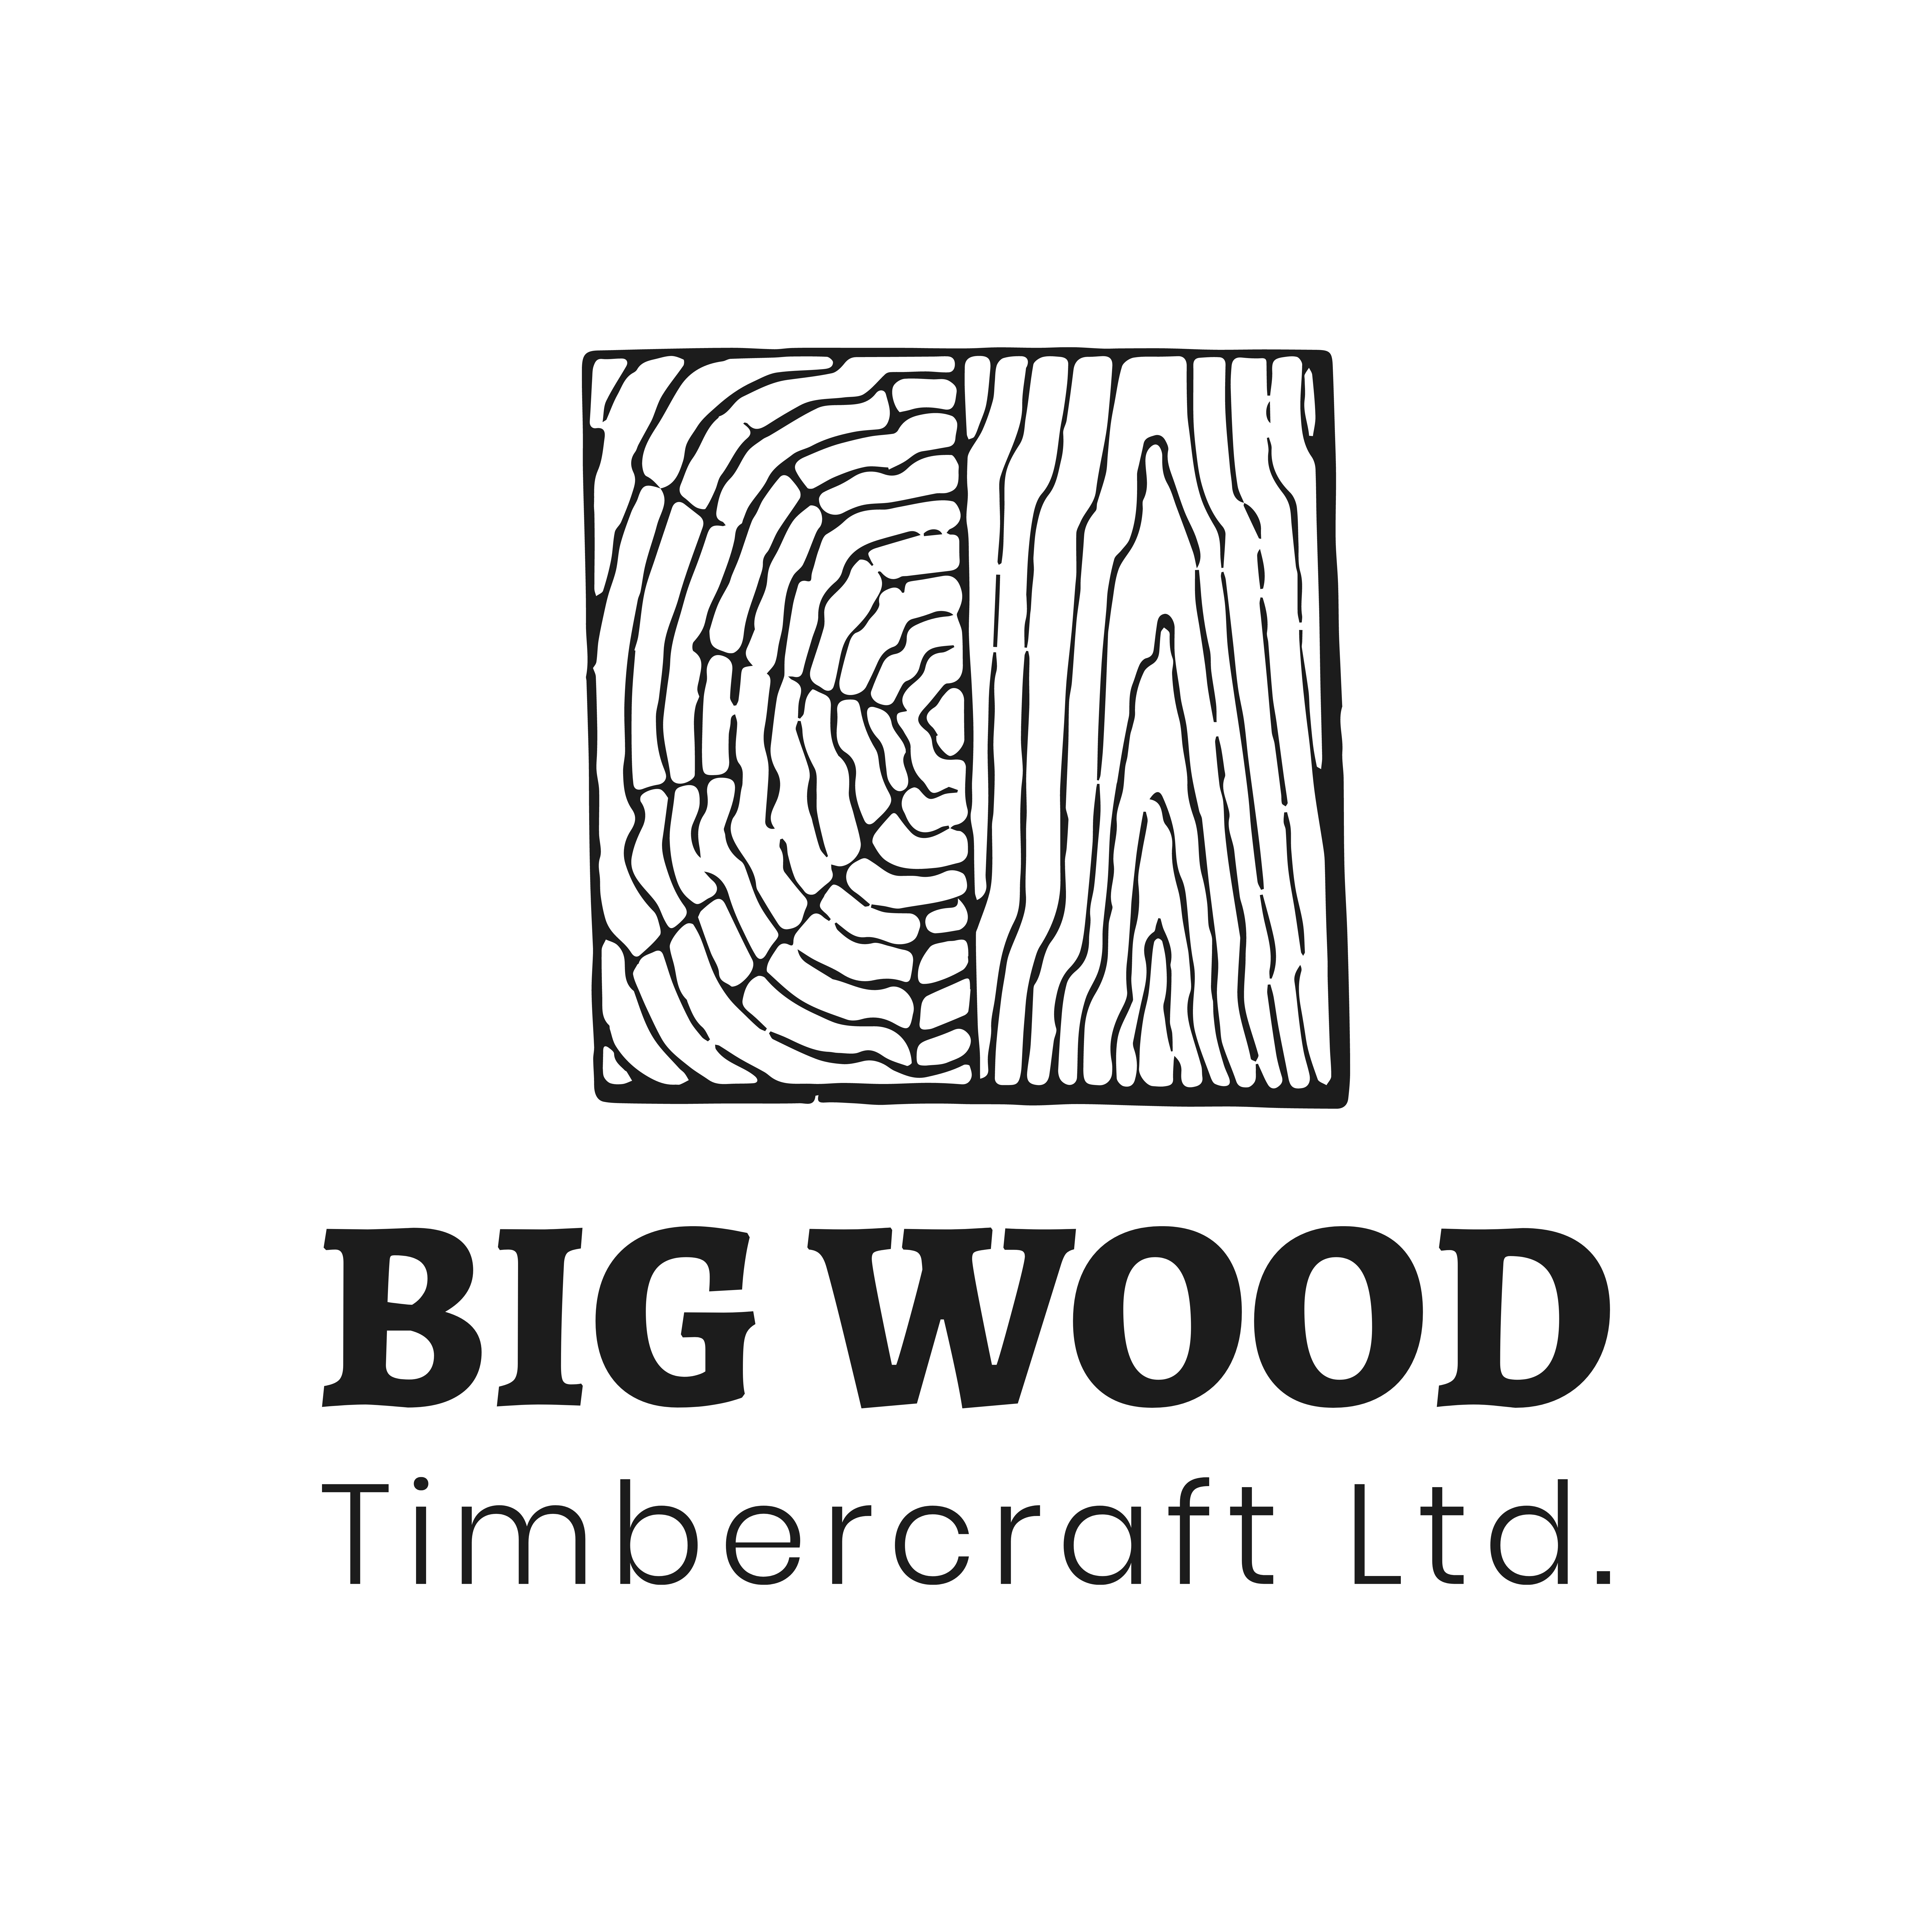 Big Wood Timbercraft Ltd. 